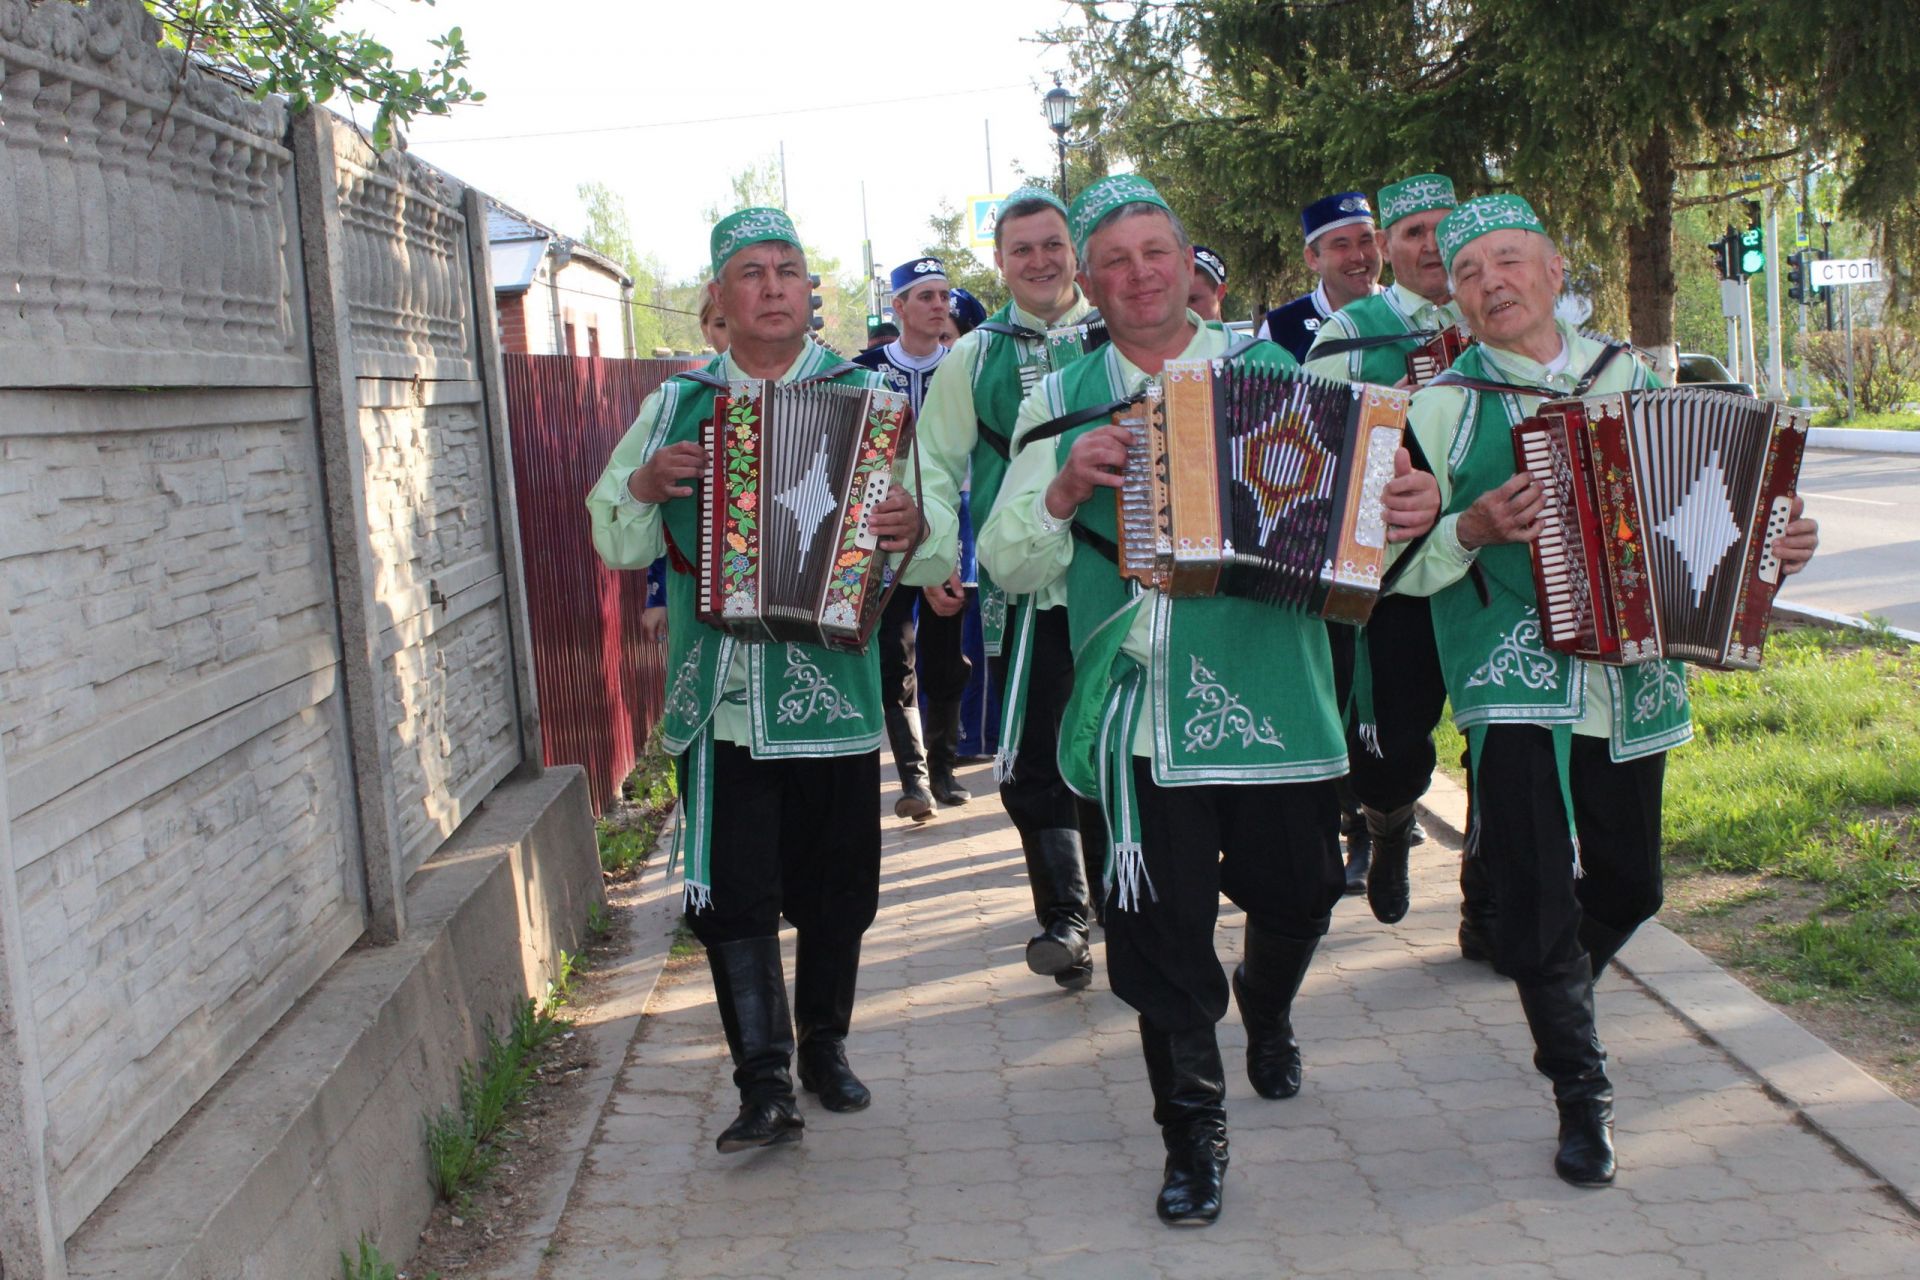 Душа поёт, гармонь играет": менделеевцы - участники парада национальных костюмов